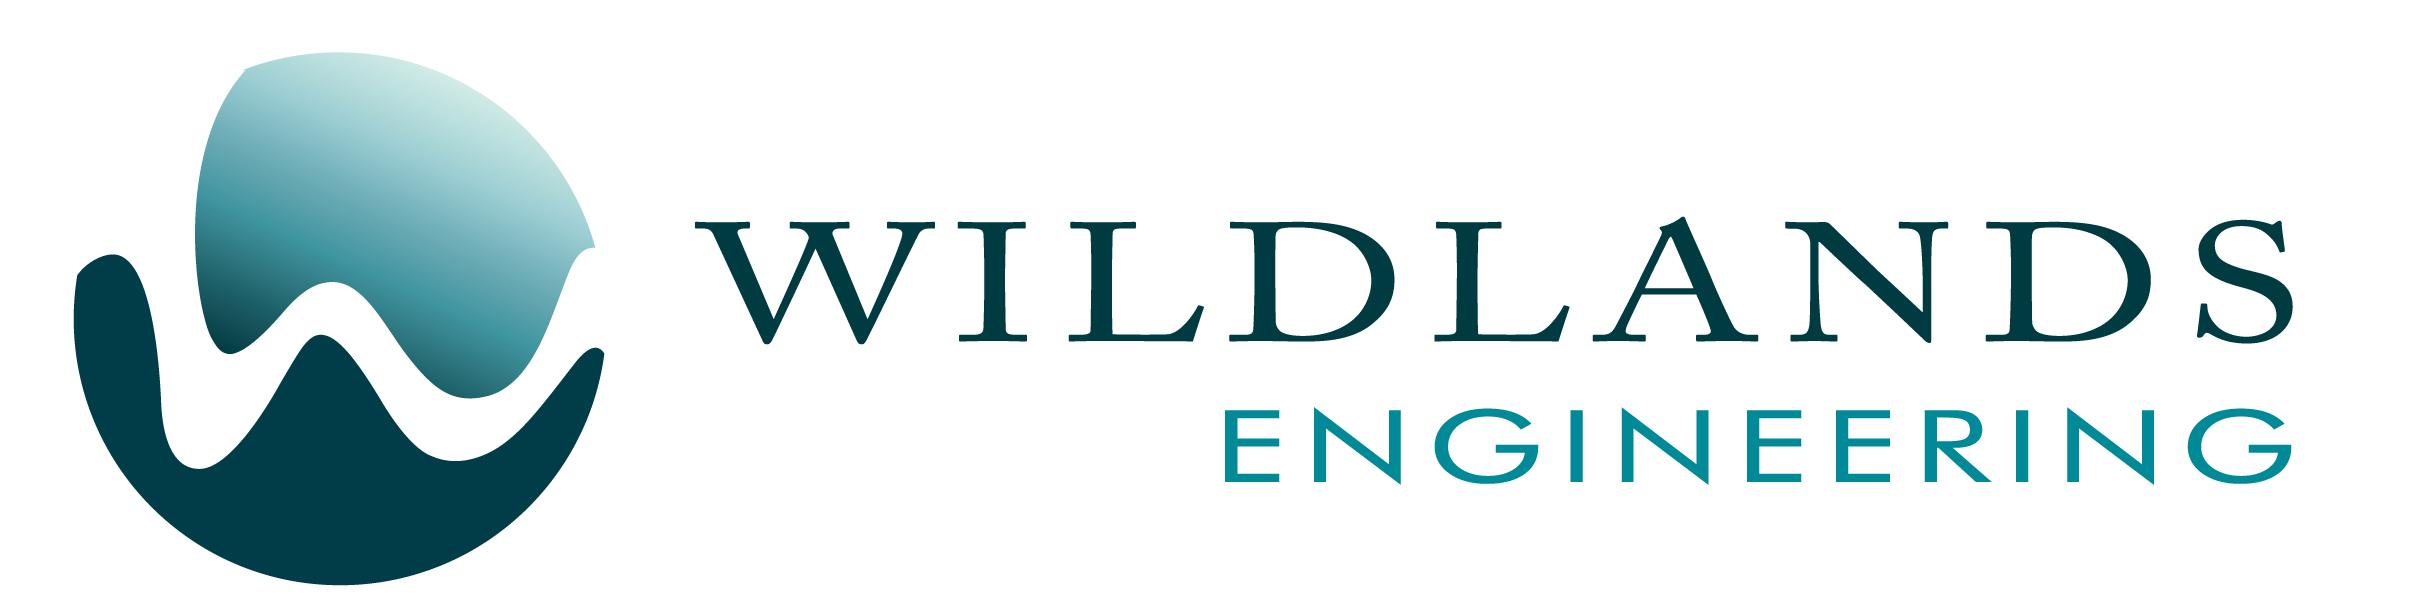 Wildlands Engineering Seeks Entry-level Environmental Designer